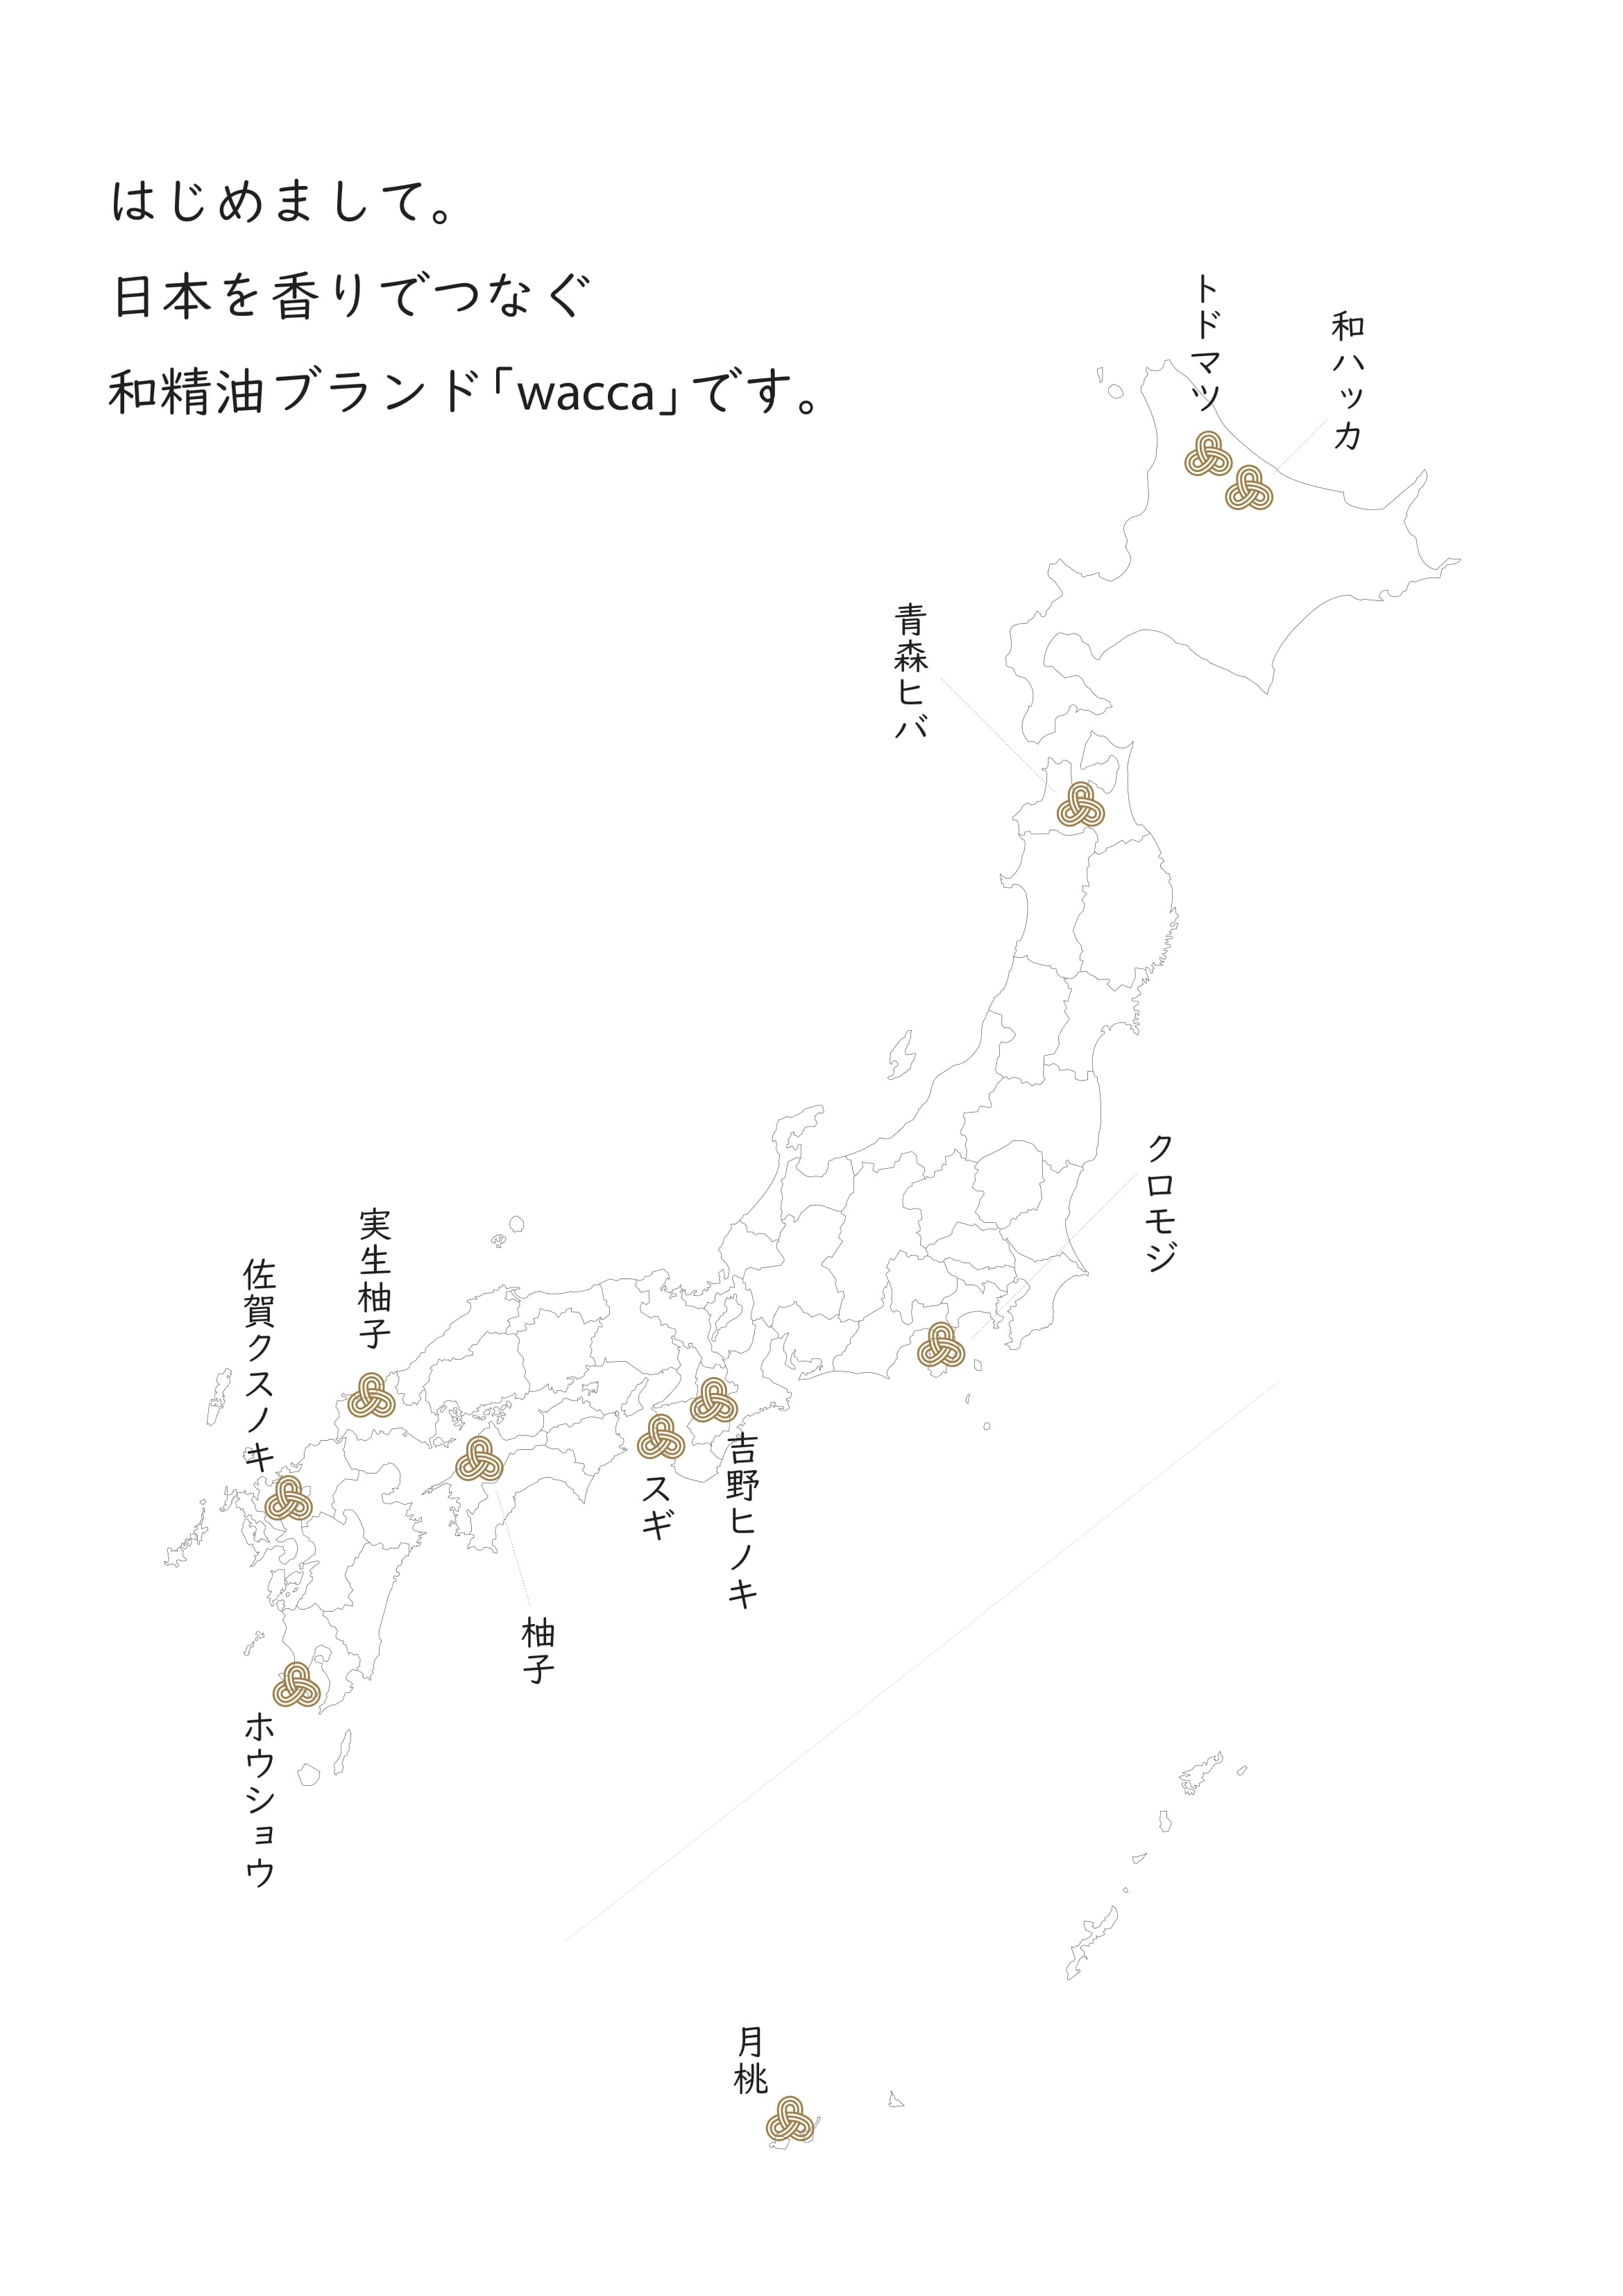 wacca 日本北海道椴松精油 (最佳使用期: 07/2024)